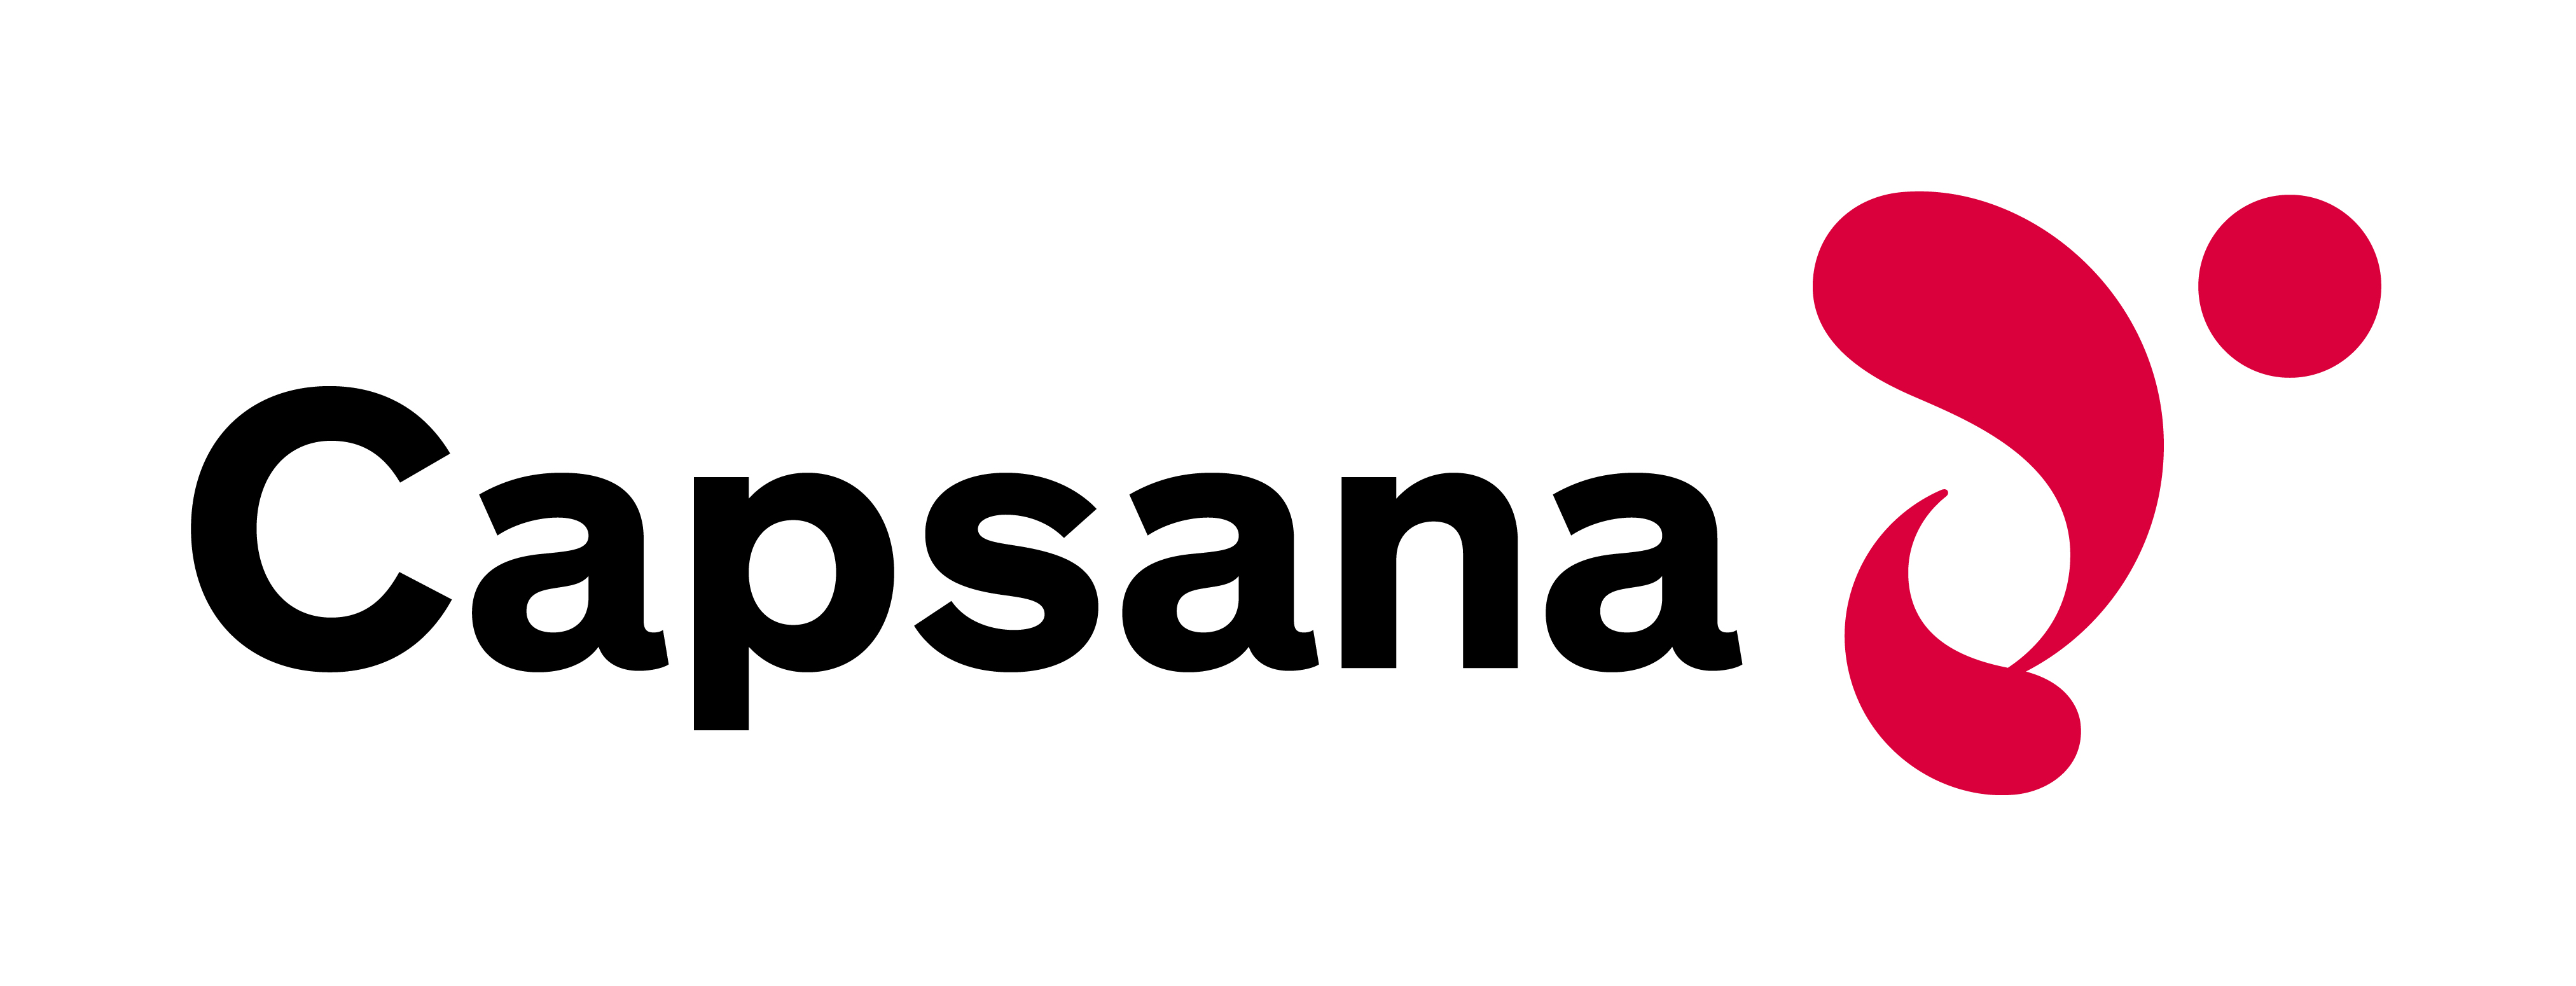 Capsana_logo_RGB_FR.jpg